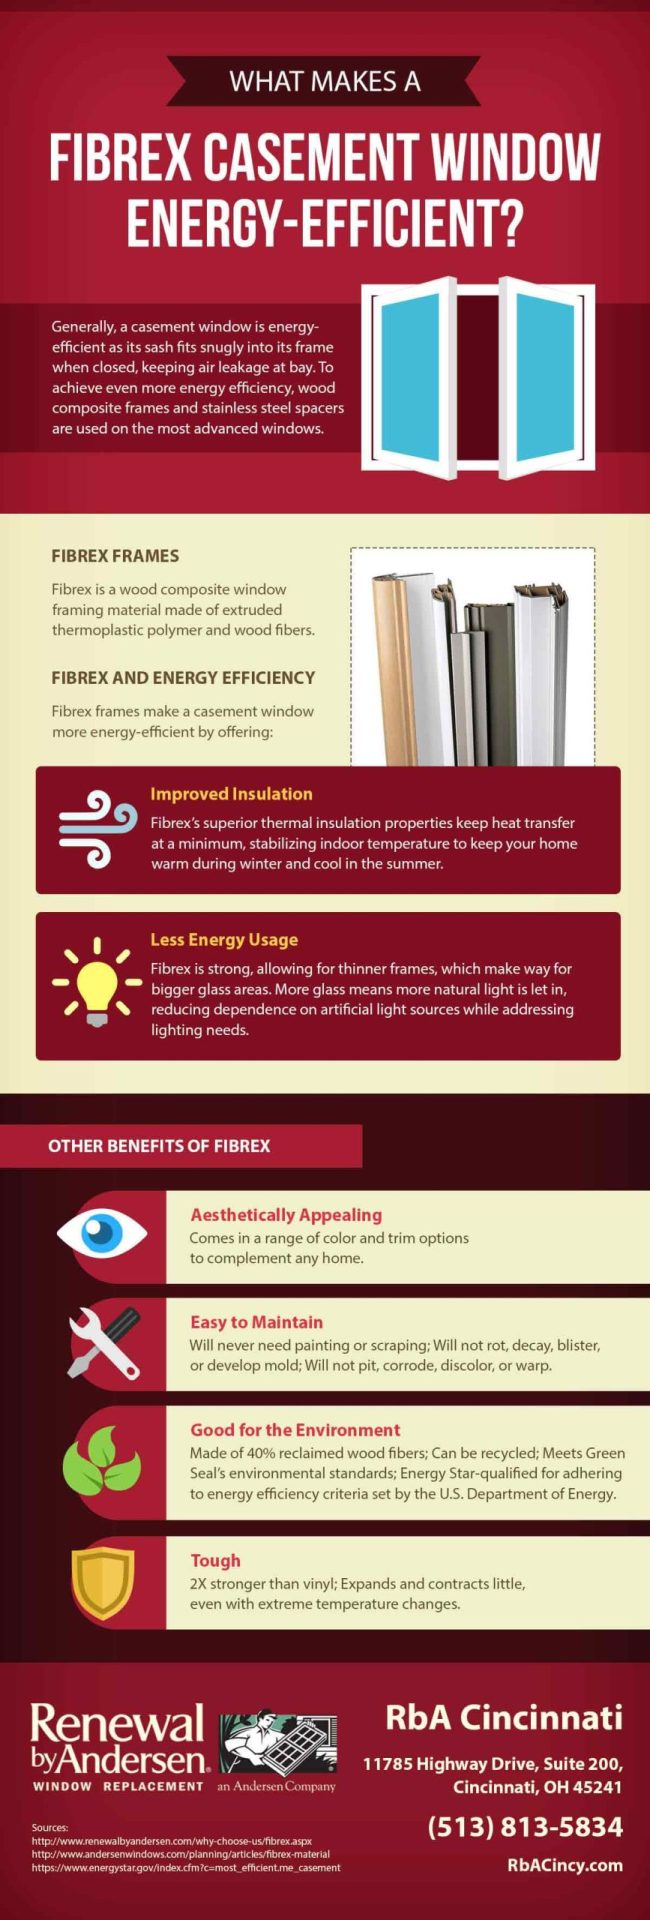 What Makes a Fibrex Casement Window Energy-Efficient